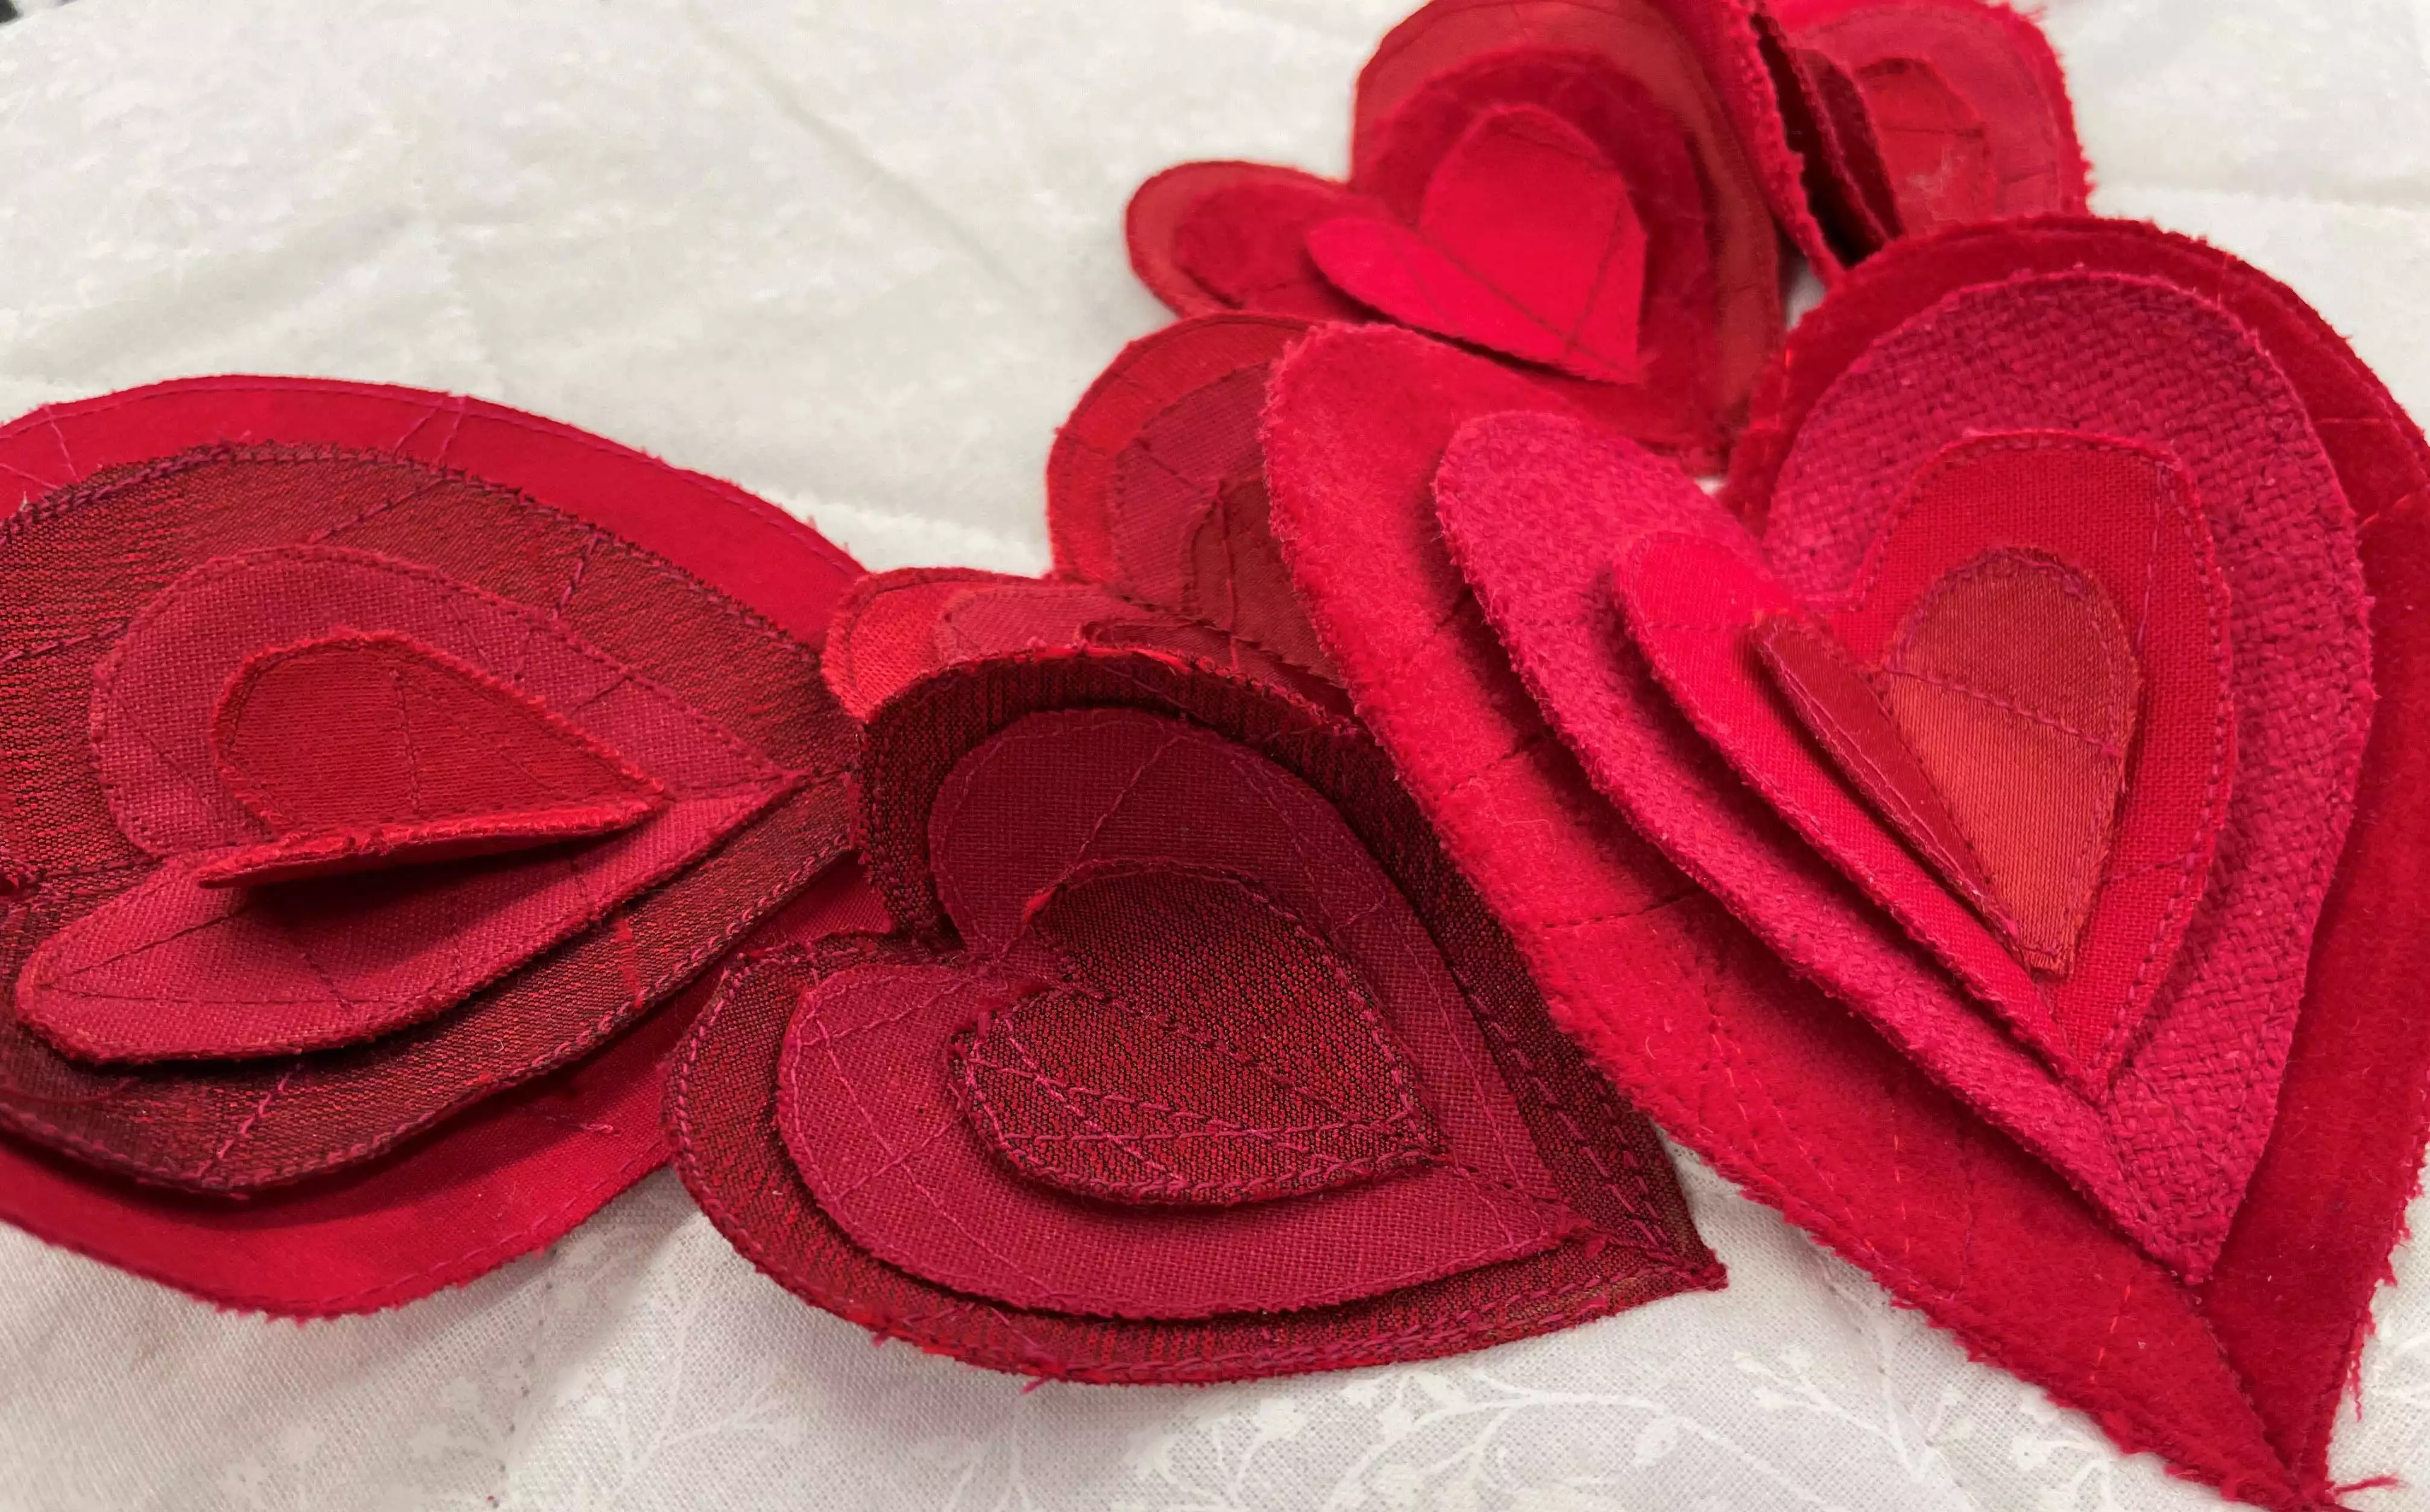 Heart-wreath-valentine-final.jpg